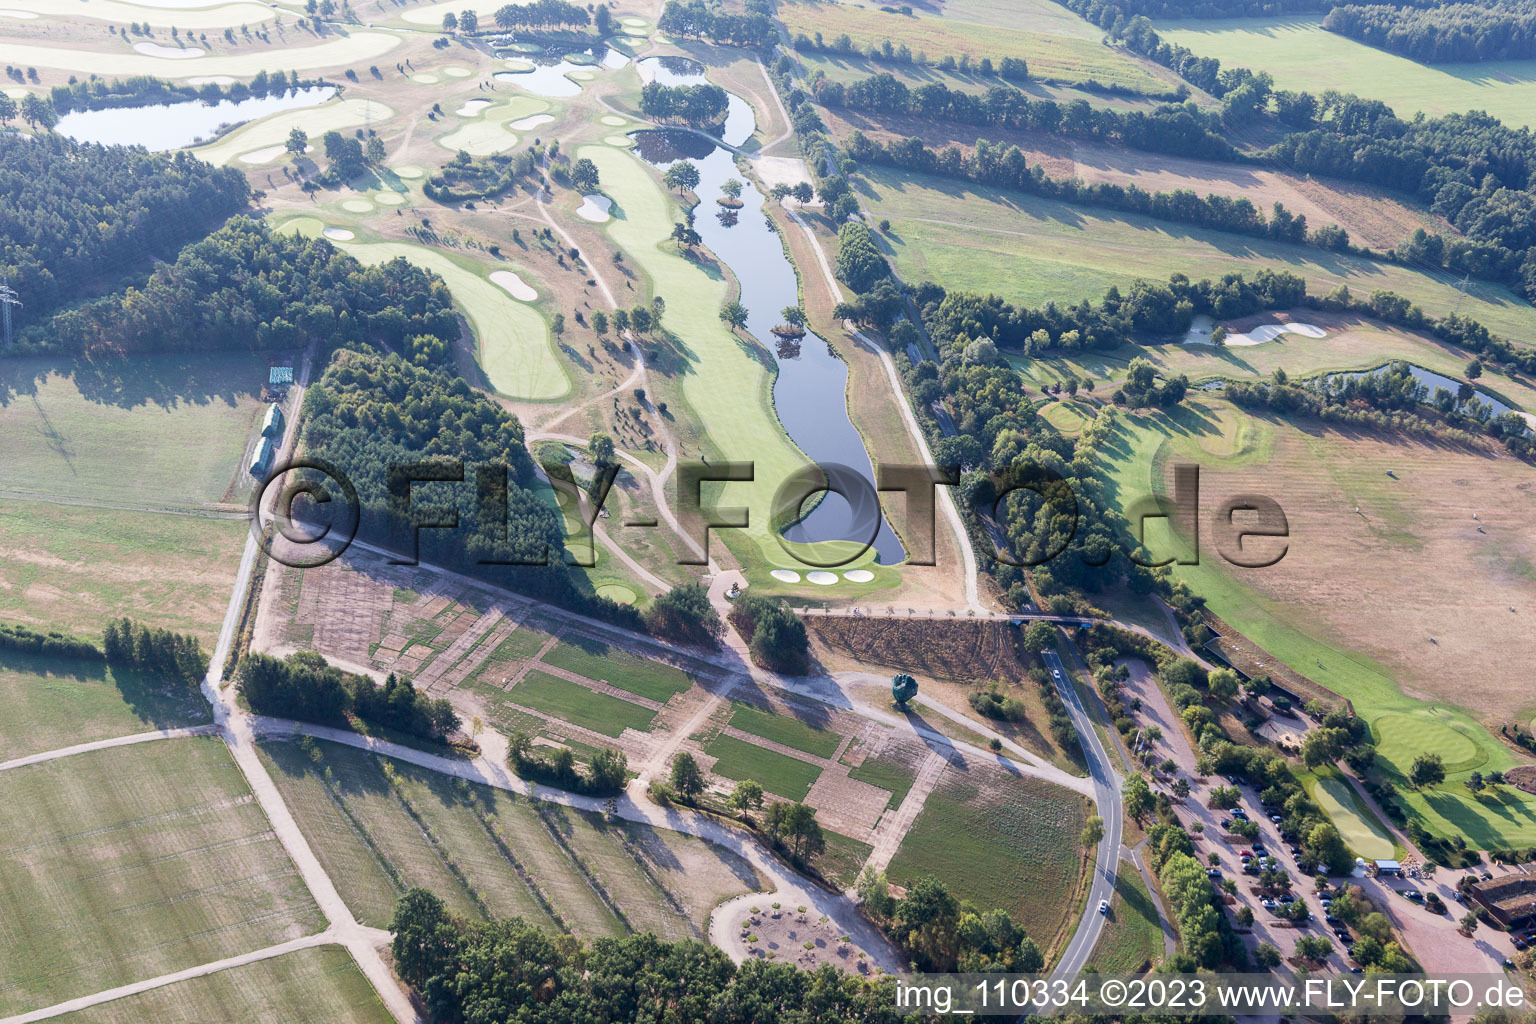 Terrain du parcours de golf Green Eagle à Winsen (Luhe) dans le département Basse-Saxe, Allemagne hors des airs